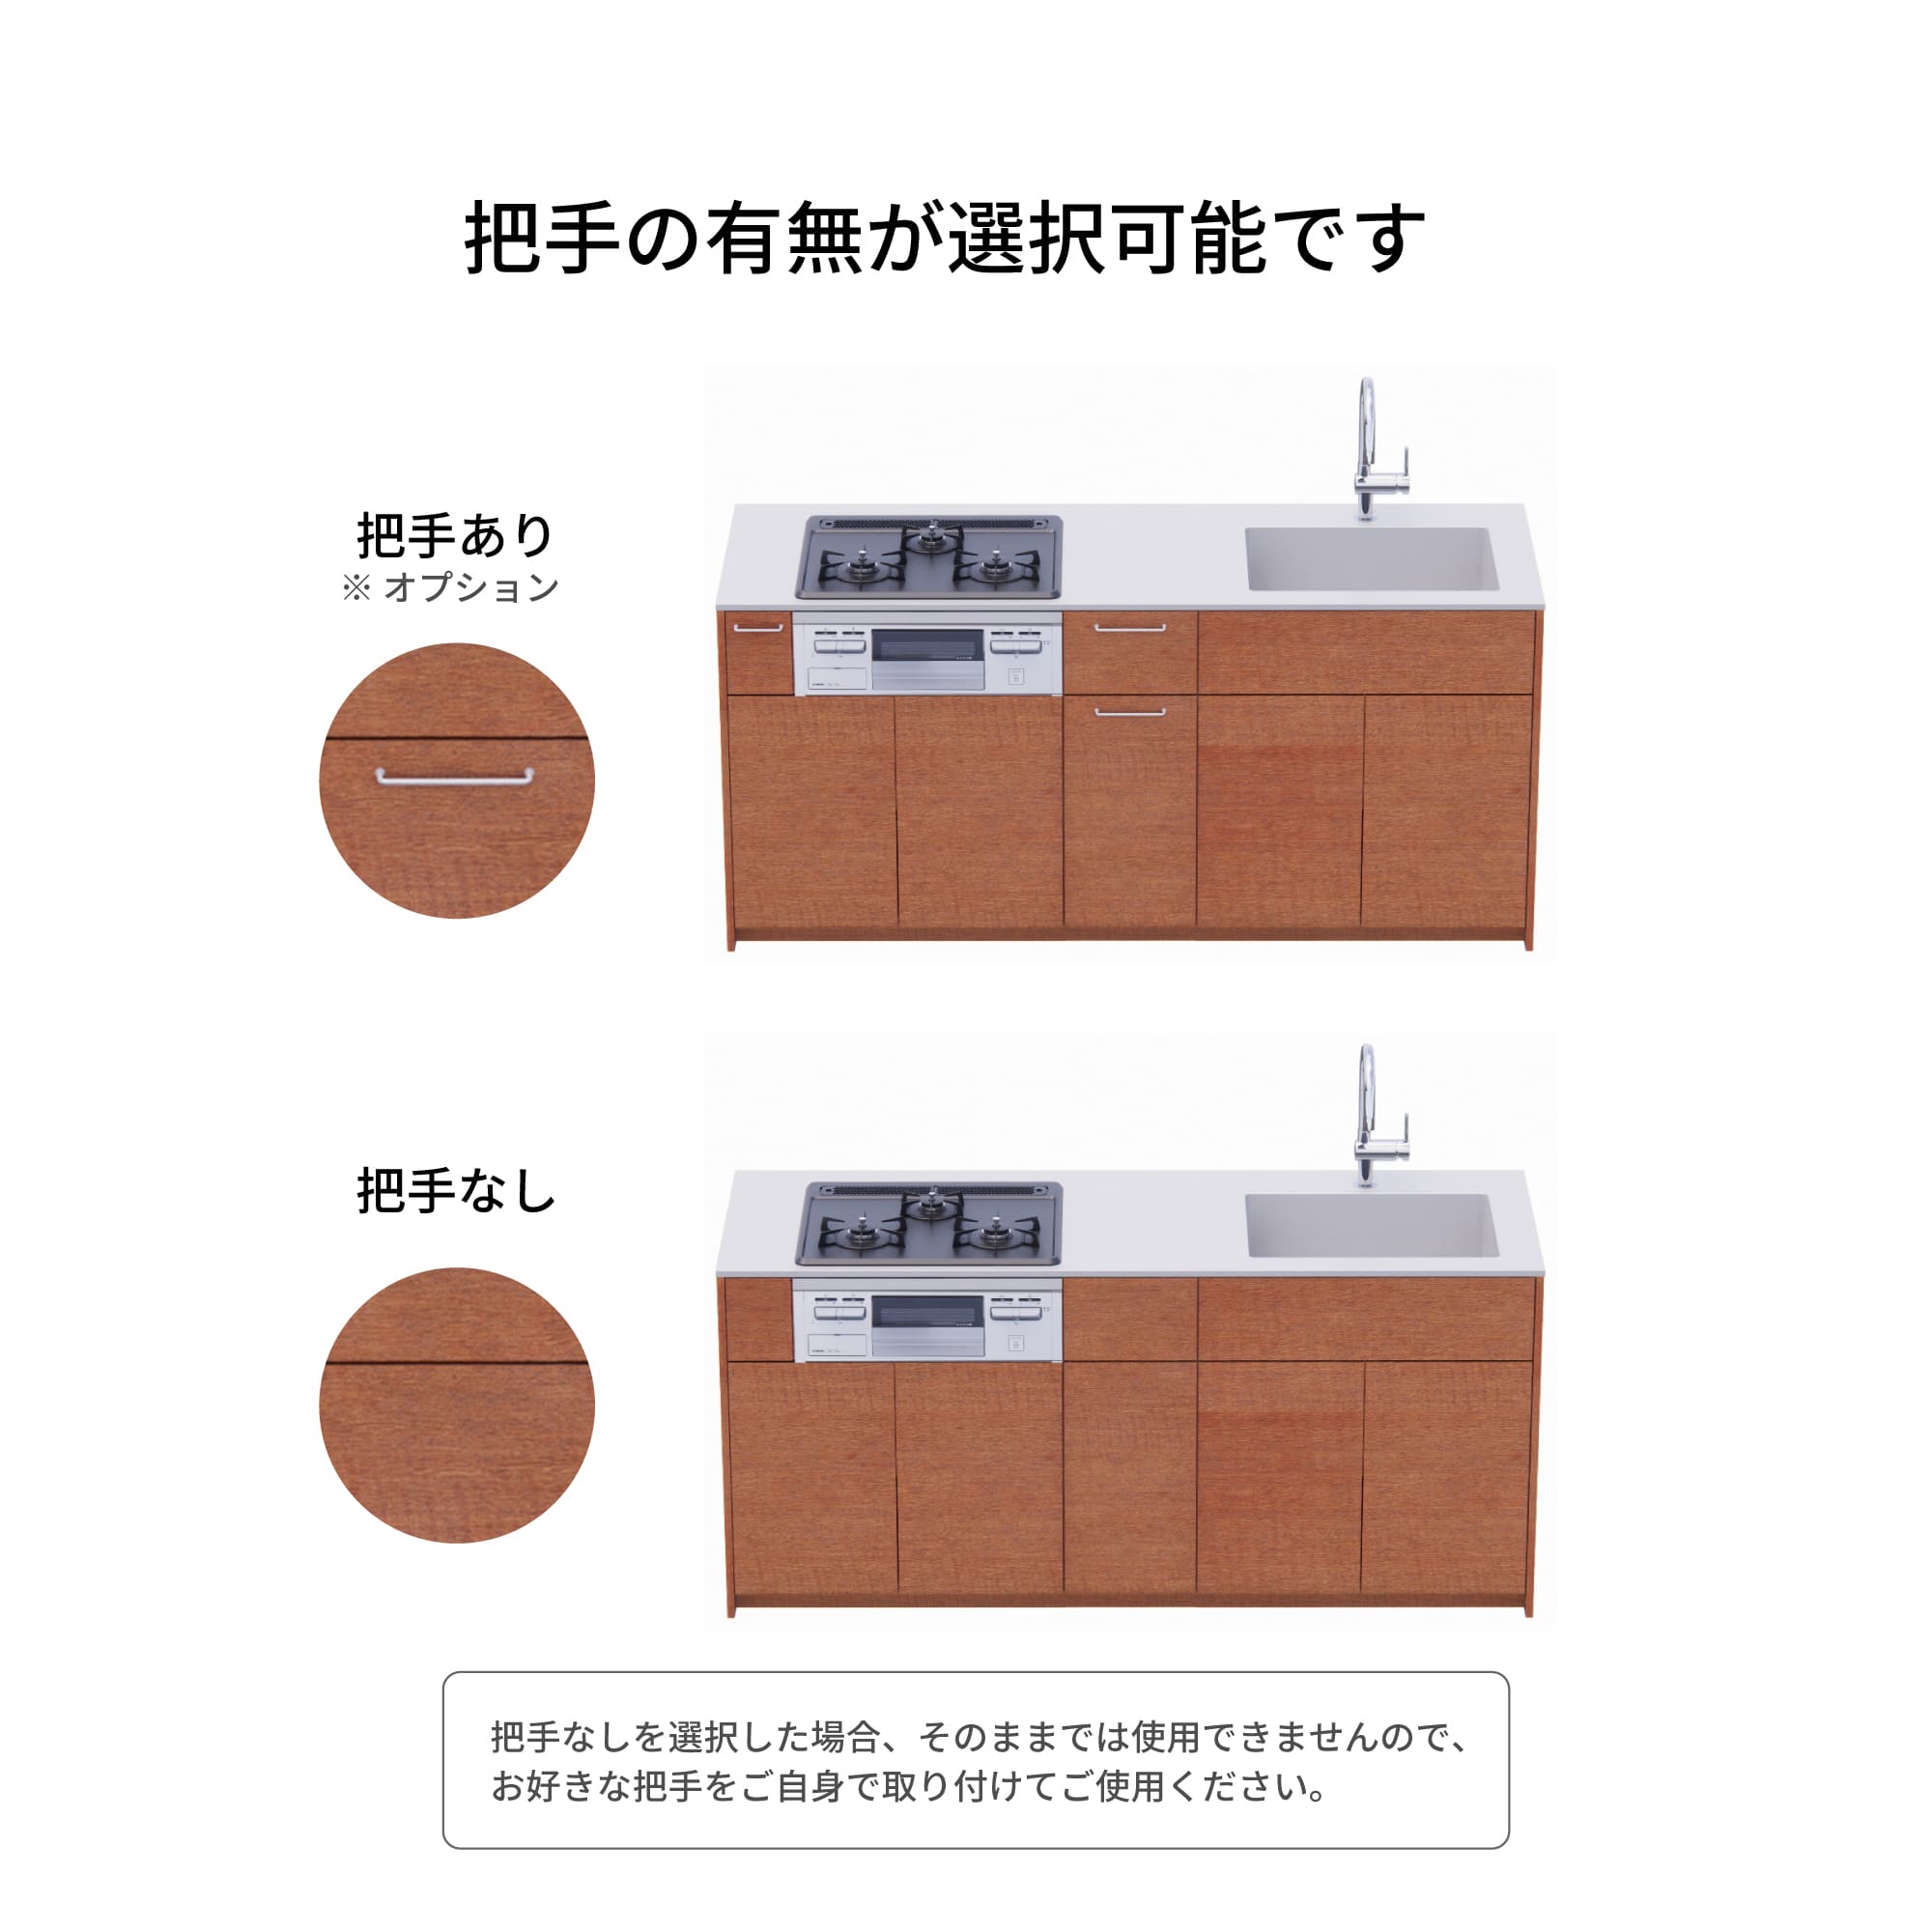 木製システムキッチン 壁付け型 W1990・コンロなし / オーブンなし / 食洗機なし KB-KC022-14-G183 把手の有無が選択可能です